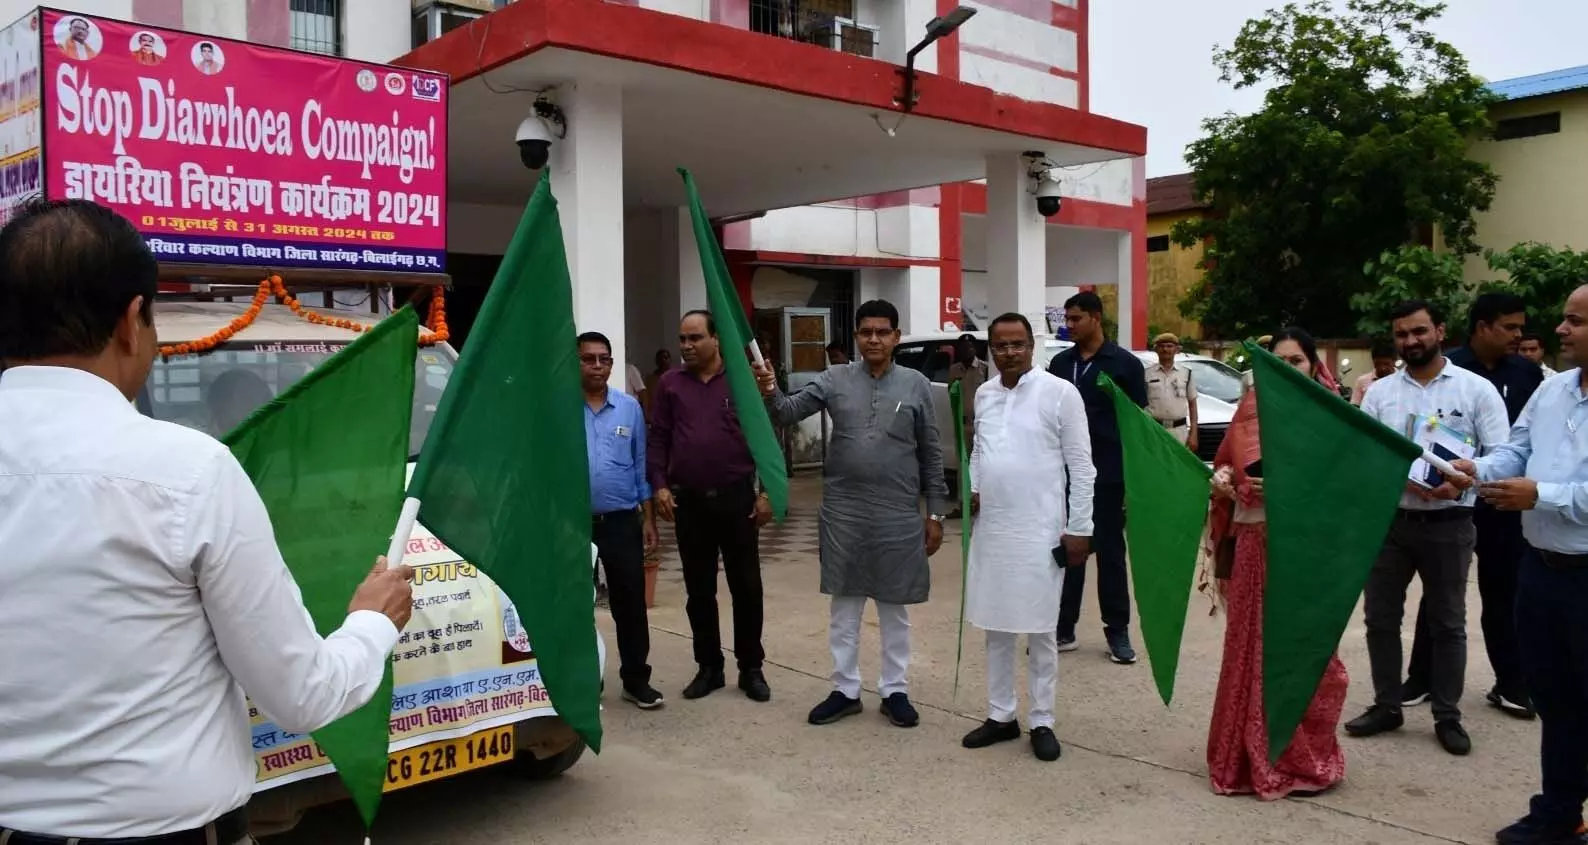 Minister टंकराम वर्मा ने डायरिया नियंत्रण रथ को हरी झंडी दिखाकर किया रवाना